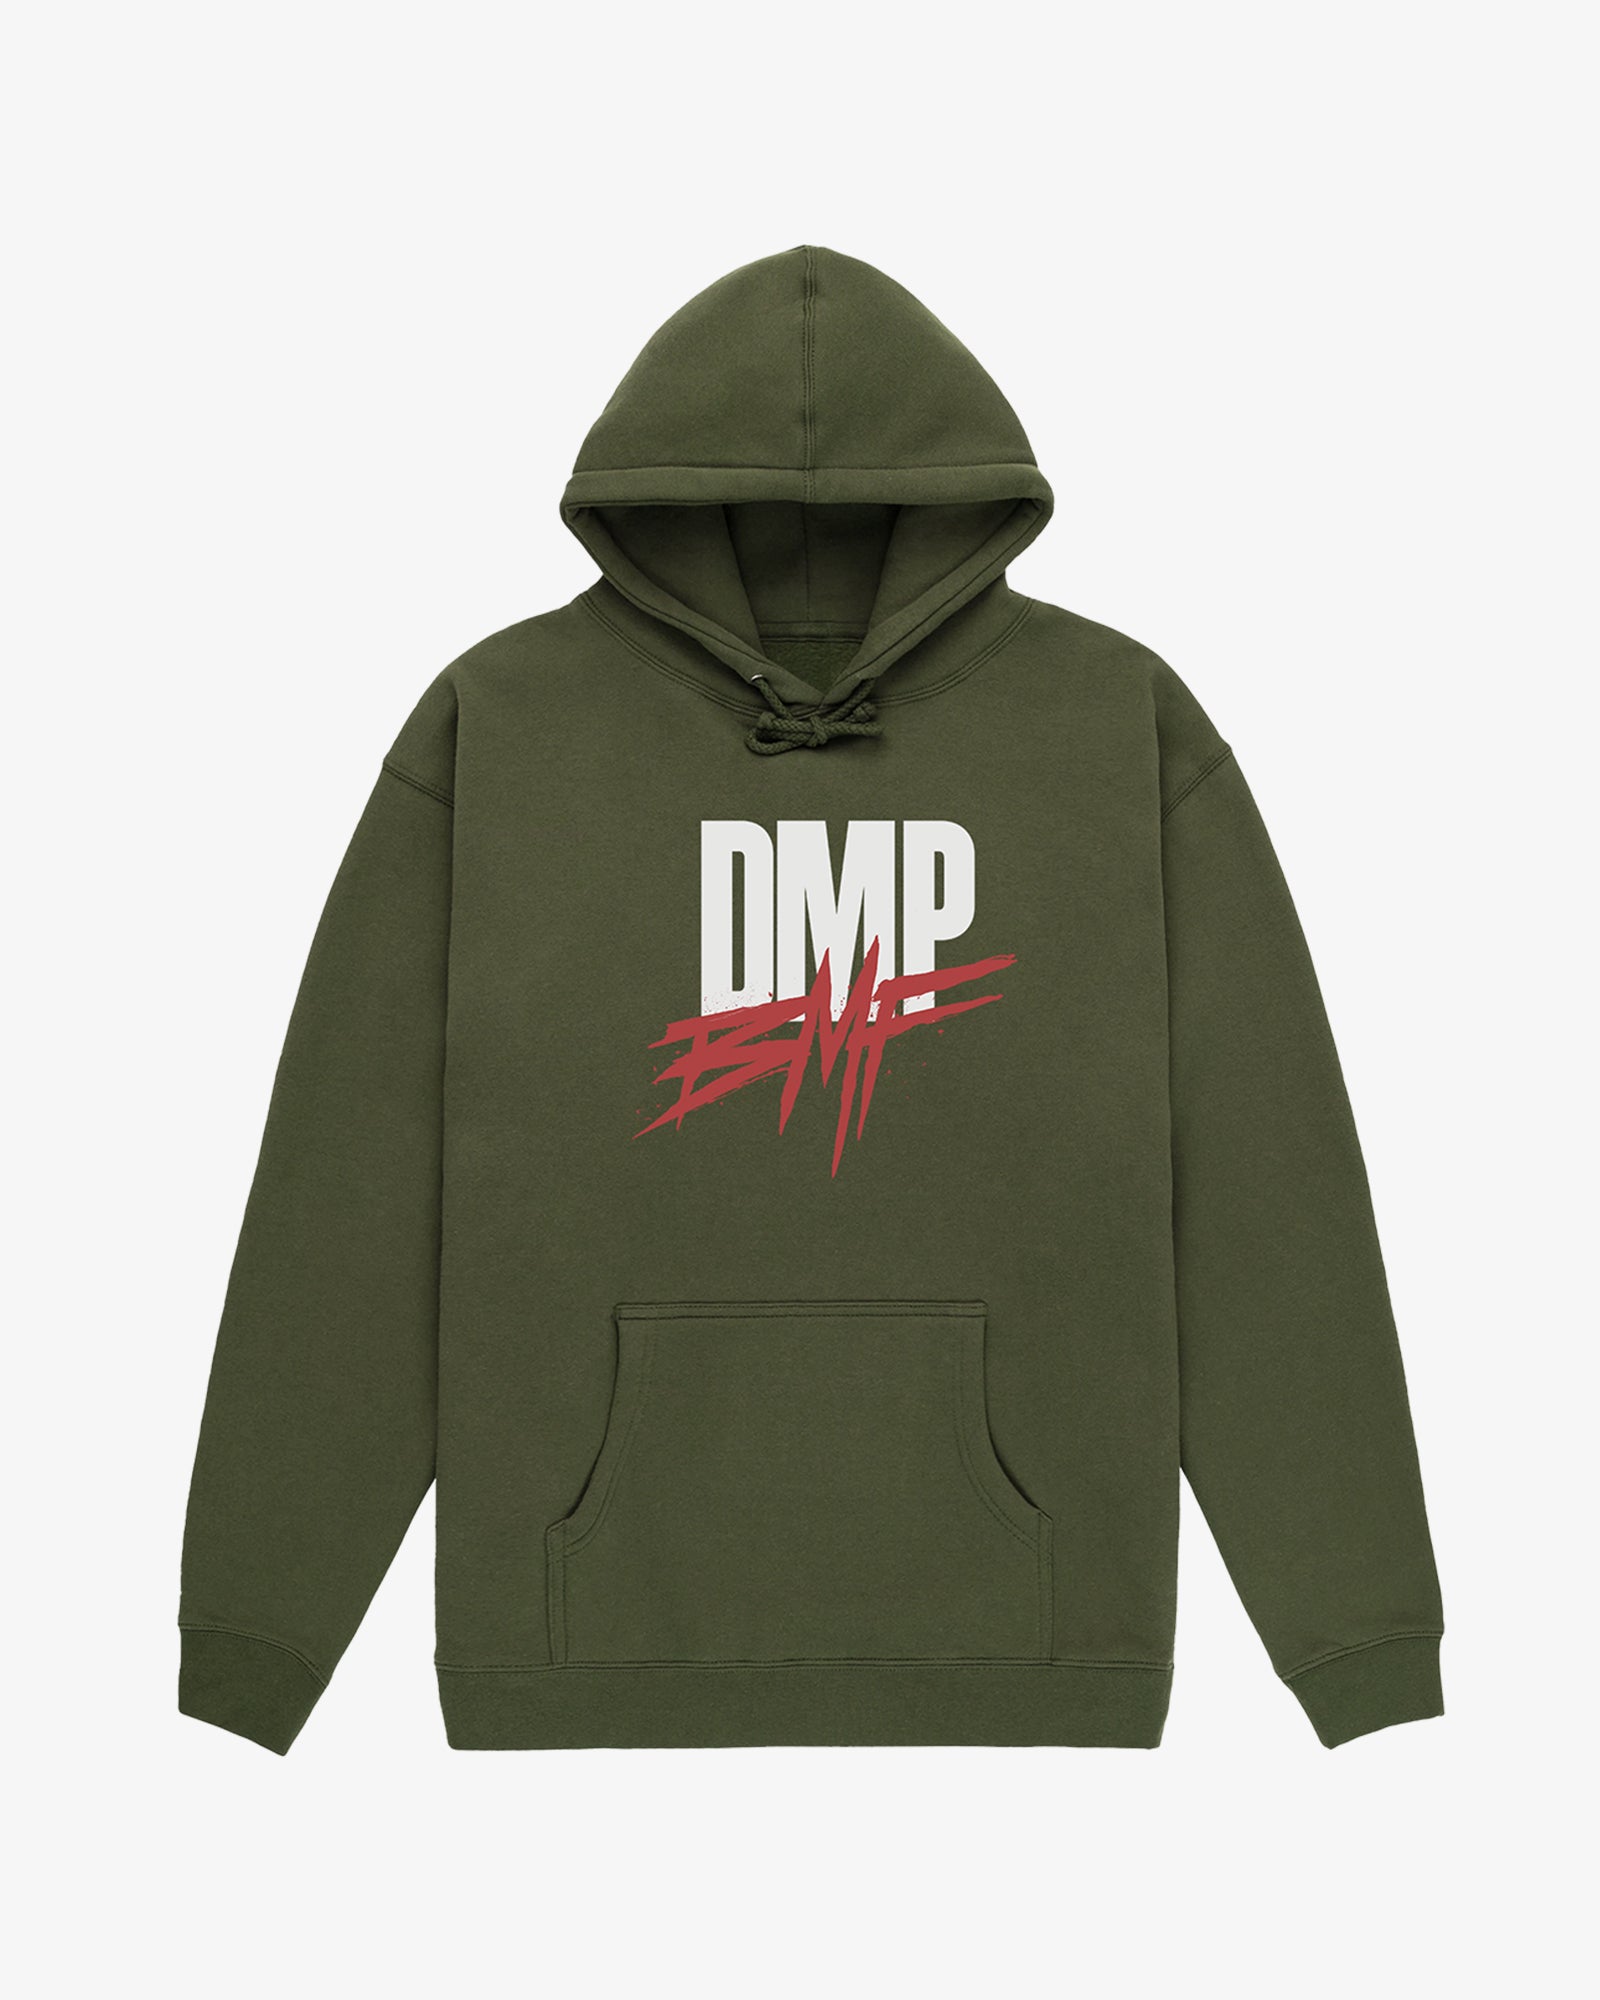 DMP/BMF Army Green Hoodie